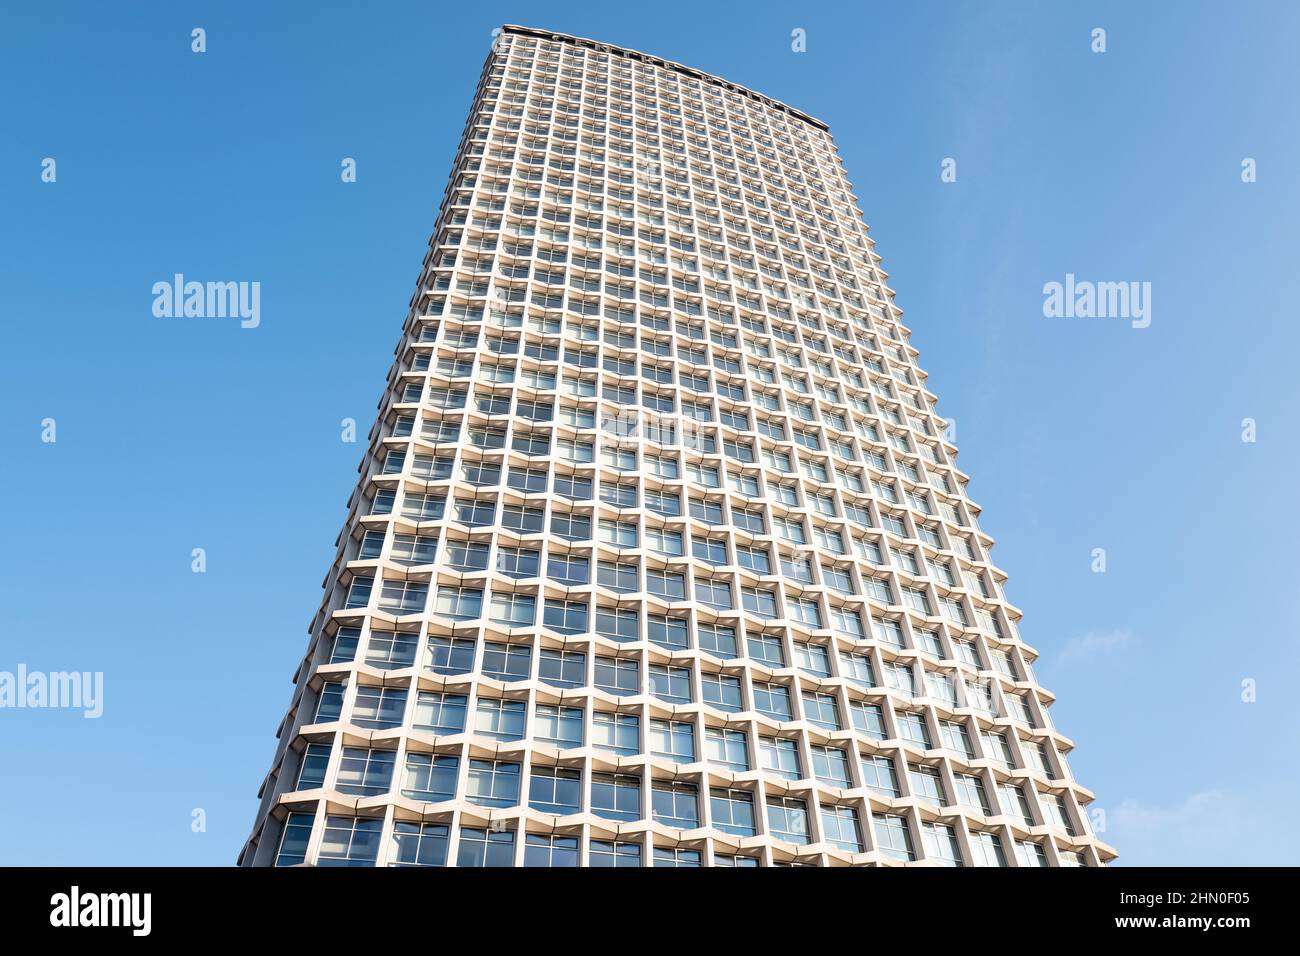 Centre Point London, Großbritannien. Architekt George Marsh. Das Center Point ist ein 34-stöckiges Gebäude mit Blick auf den St. Giles Circus. Erbaut um 1963. Stockfoto